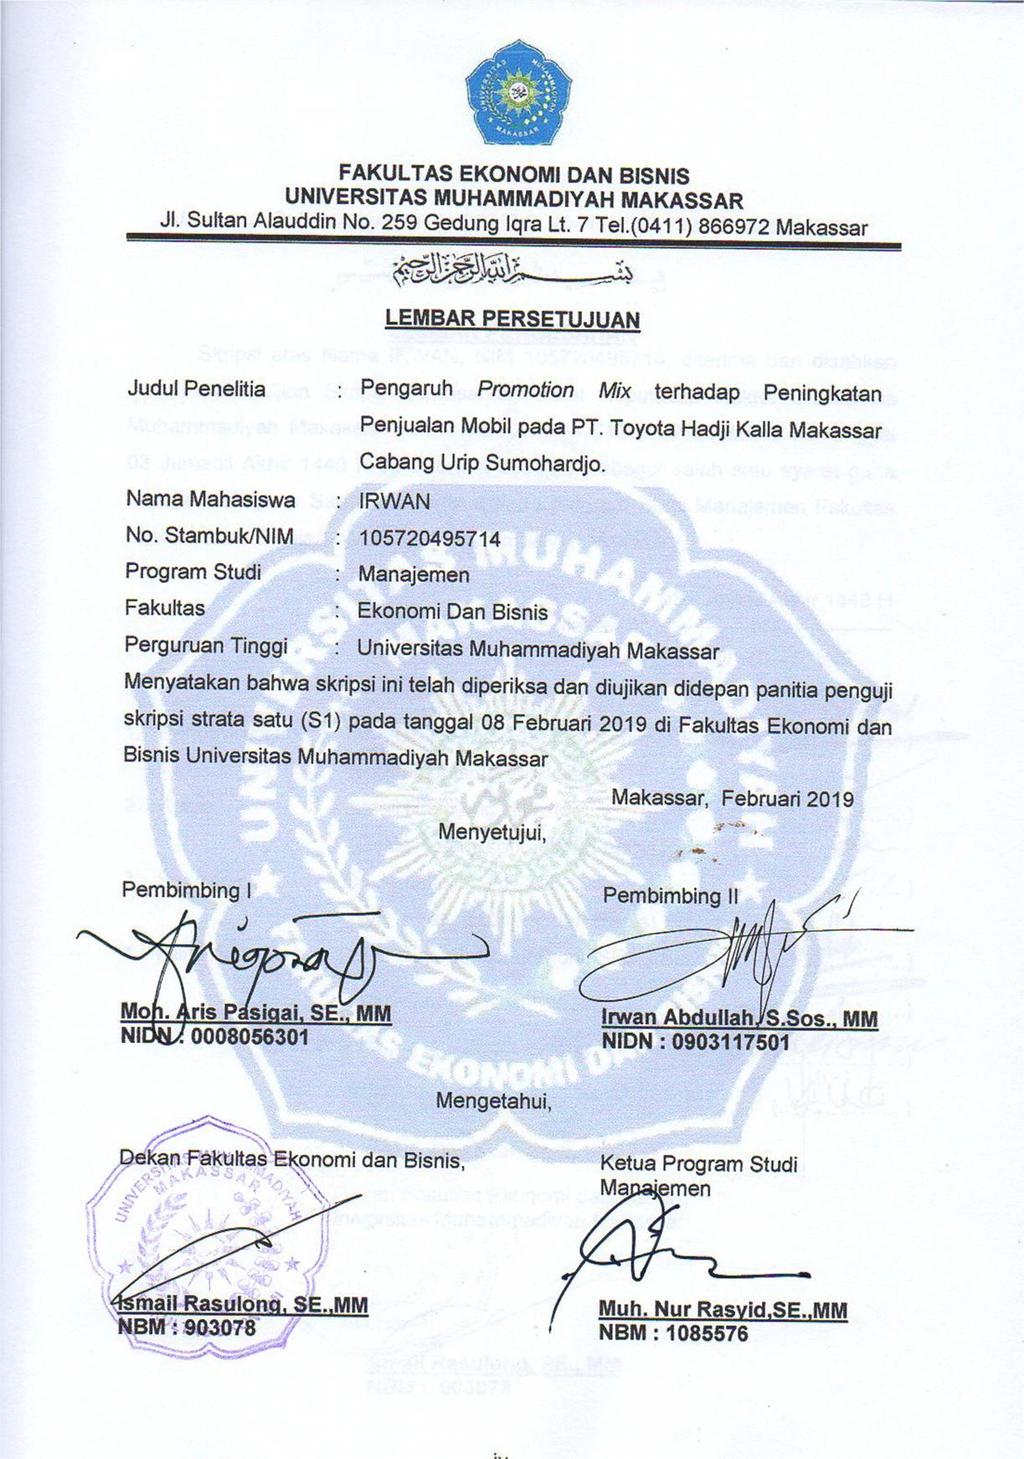 FAKULTAS EKONOMI DAN BISNIS UNIVERSITAS MUHAMMADIYAH MAKASSAR Jl. Sultan Alauddin No. 259 GedungIqra Lt. 7 Tel.(0411) 866972 Makassar 1.